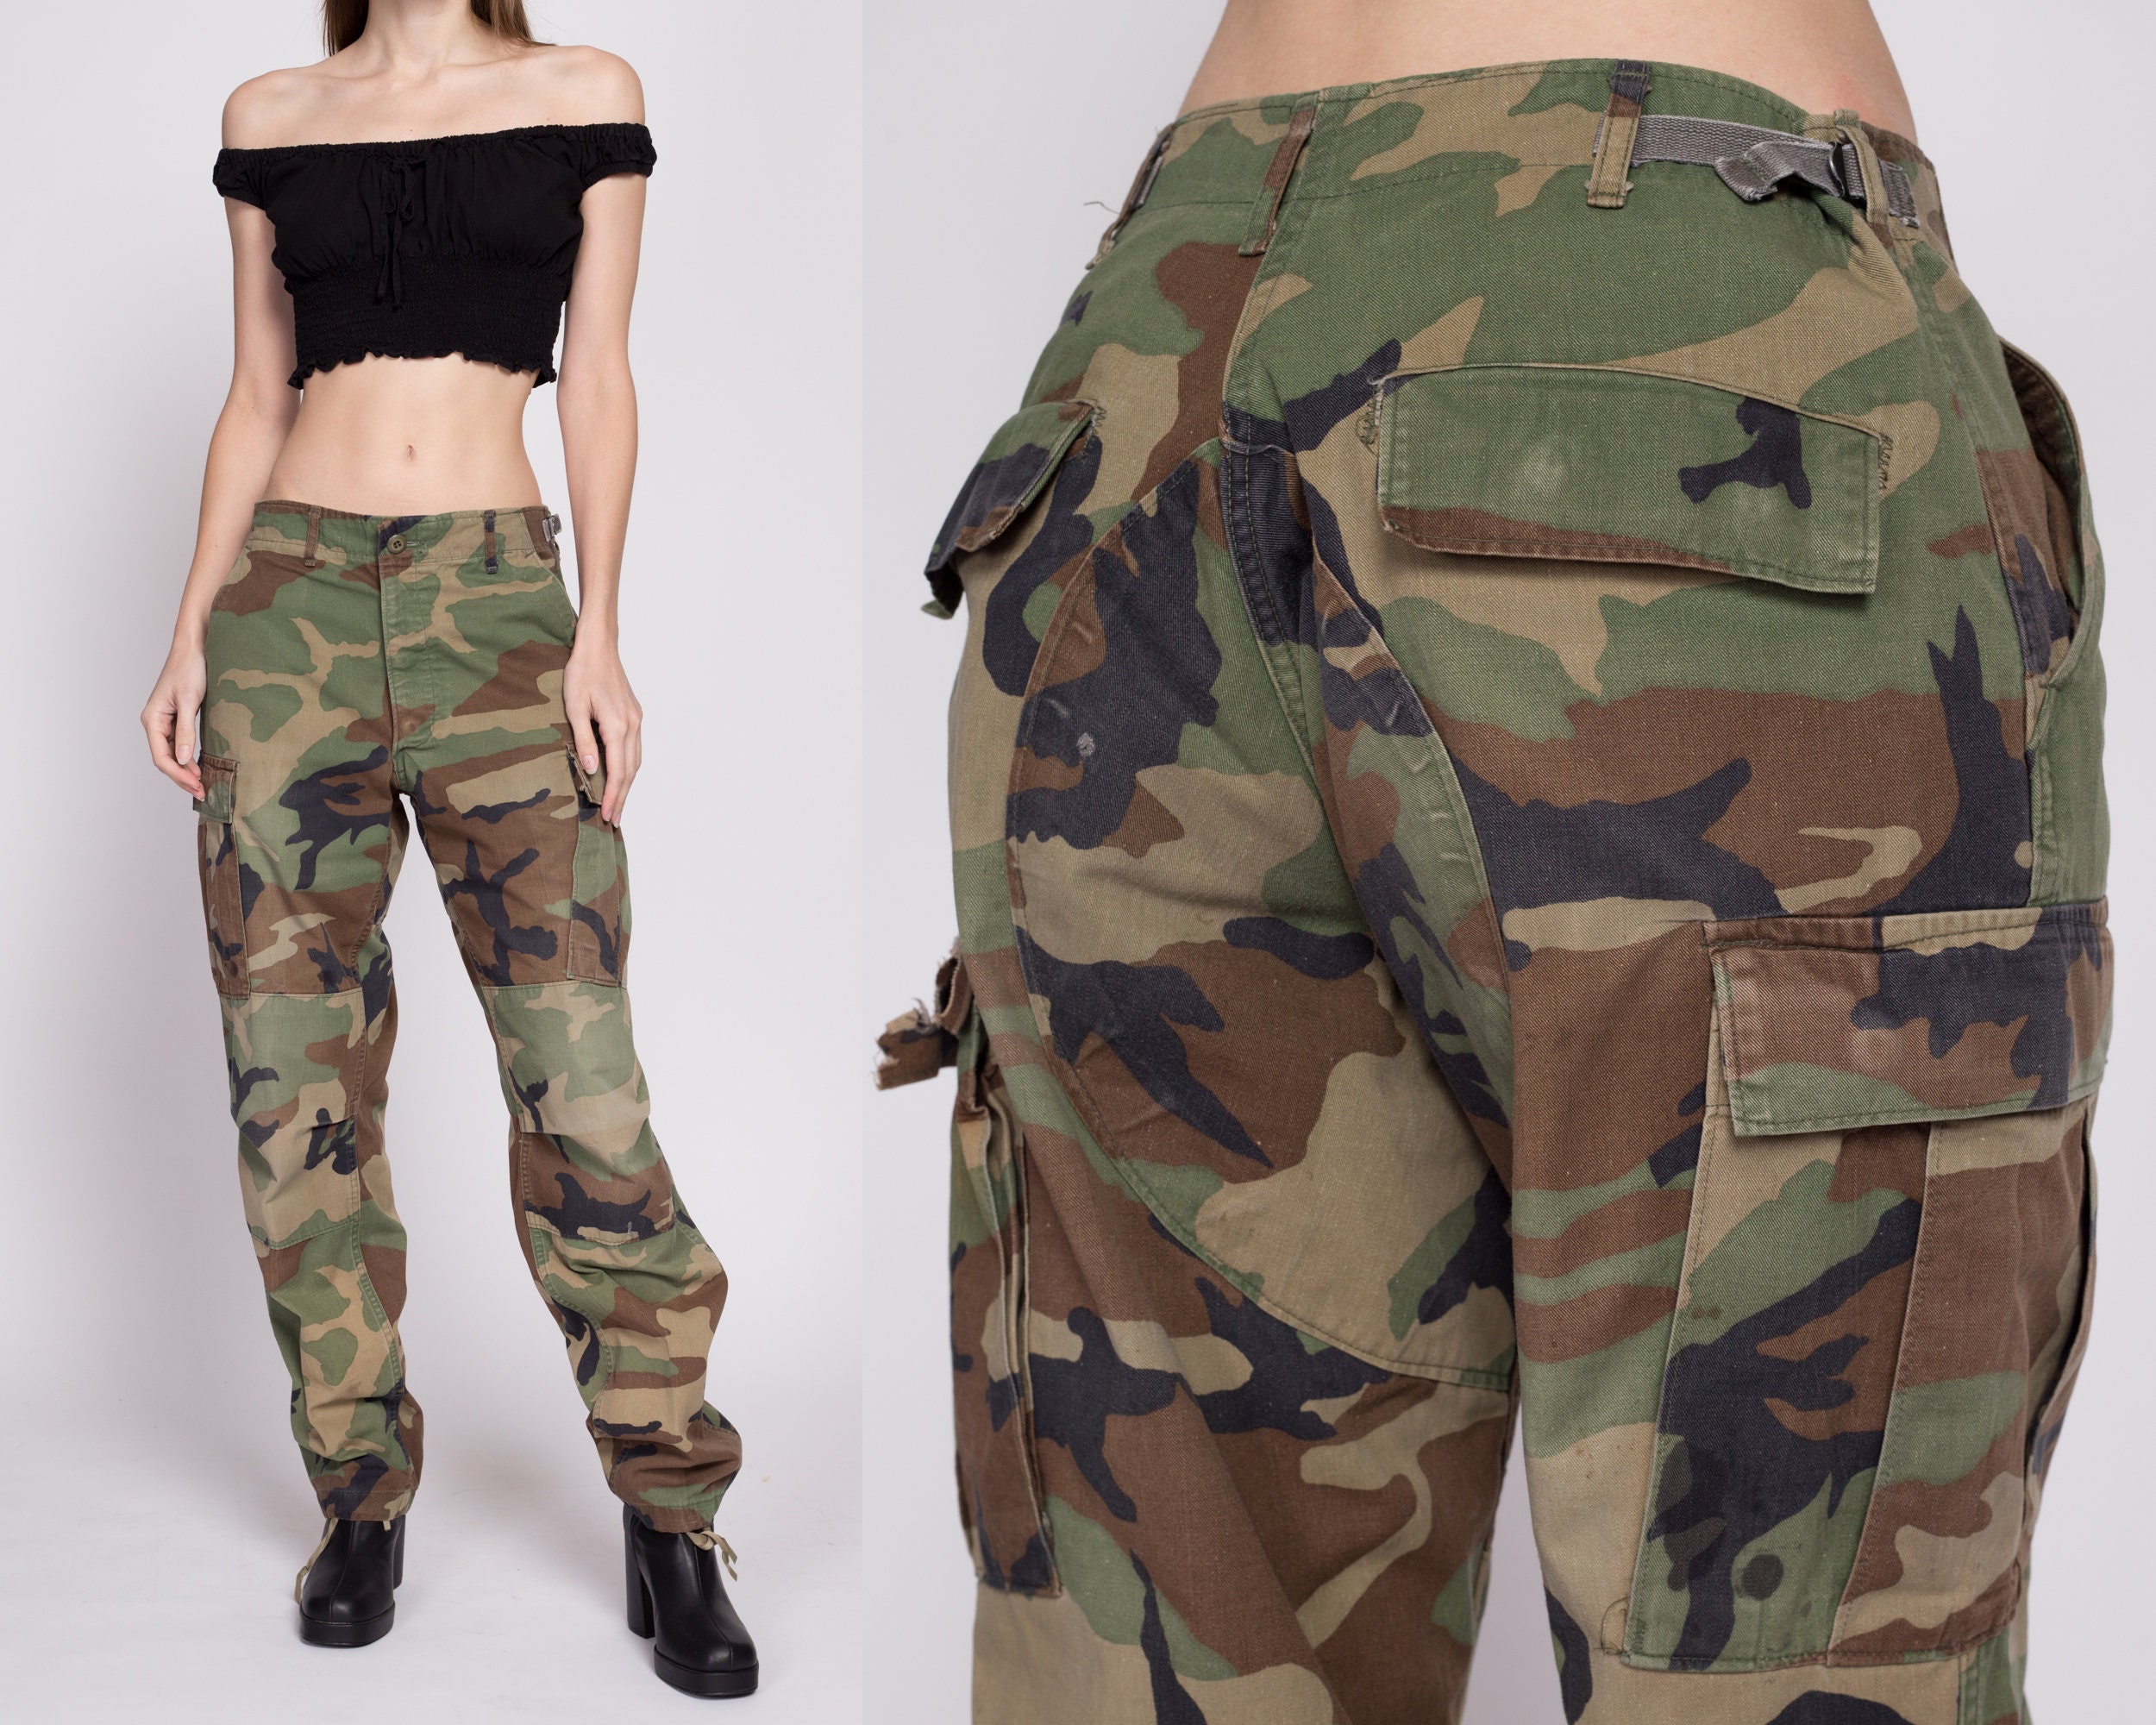 9 Army pants ideas  army pants womens camo camo pants